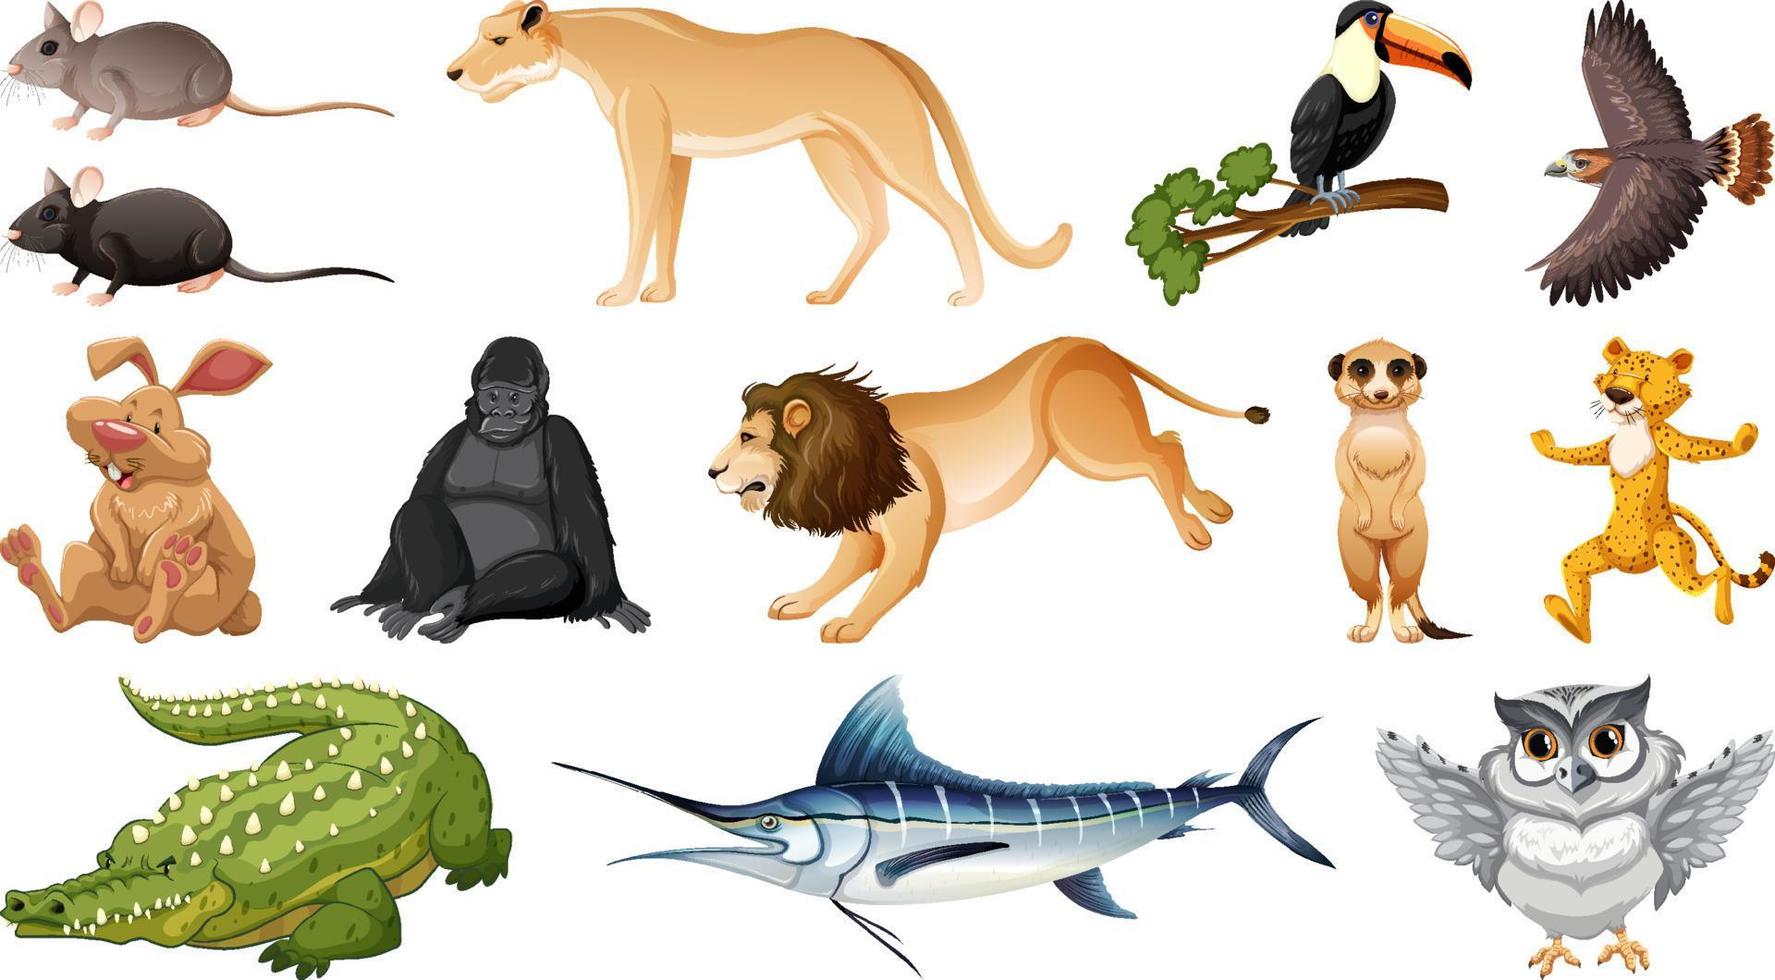 set van verschillende stripfiguren met wilde dieren vector